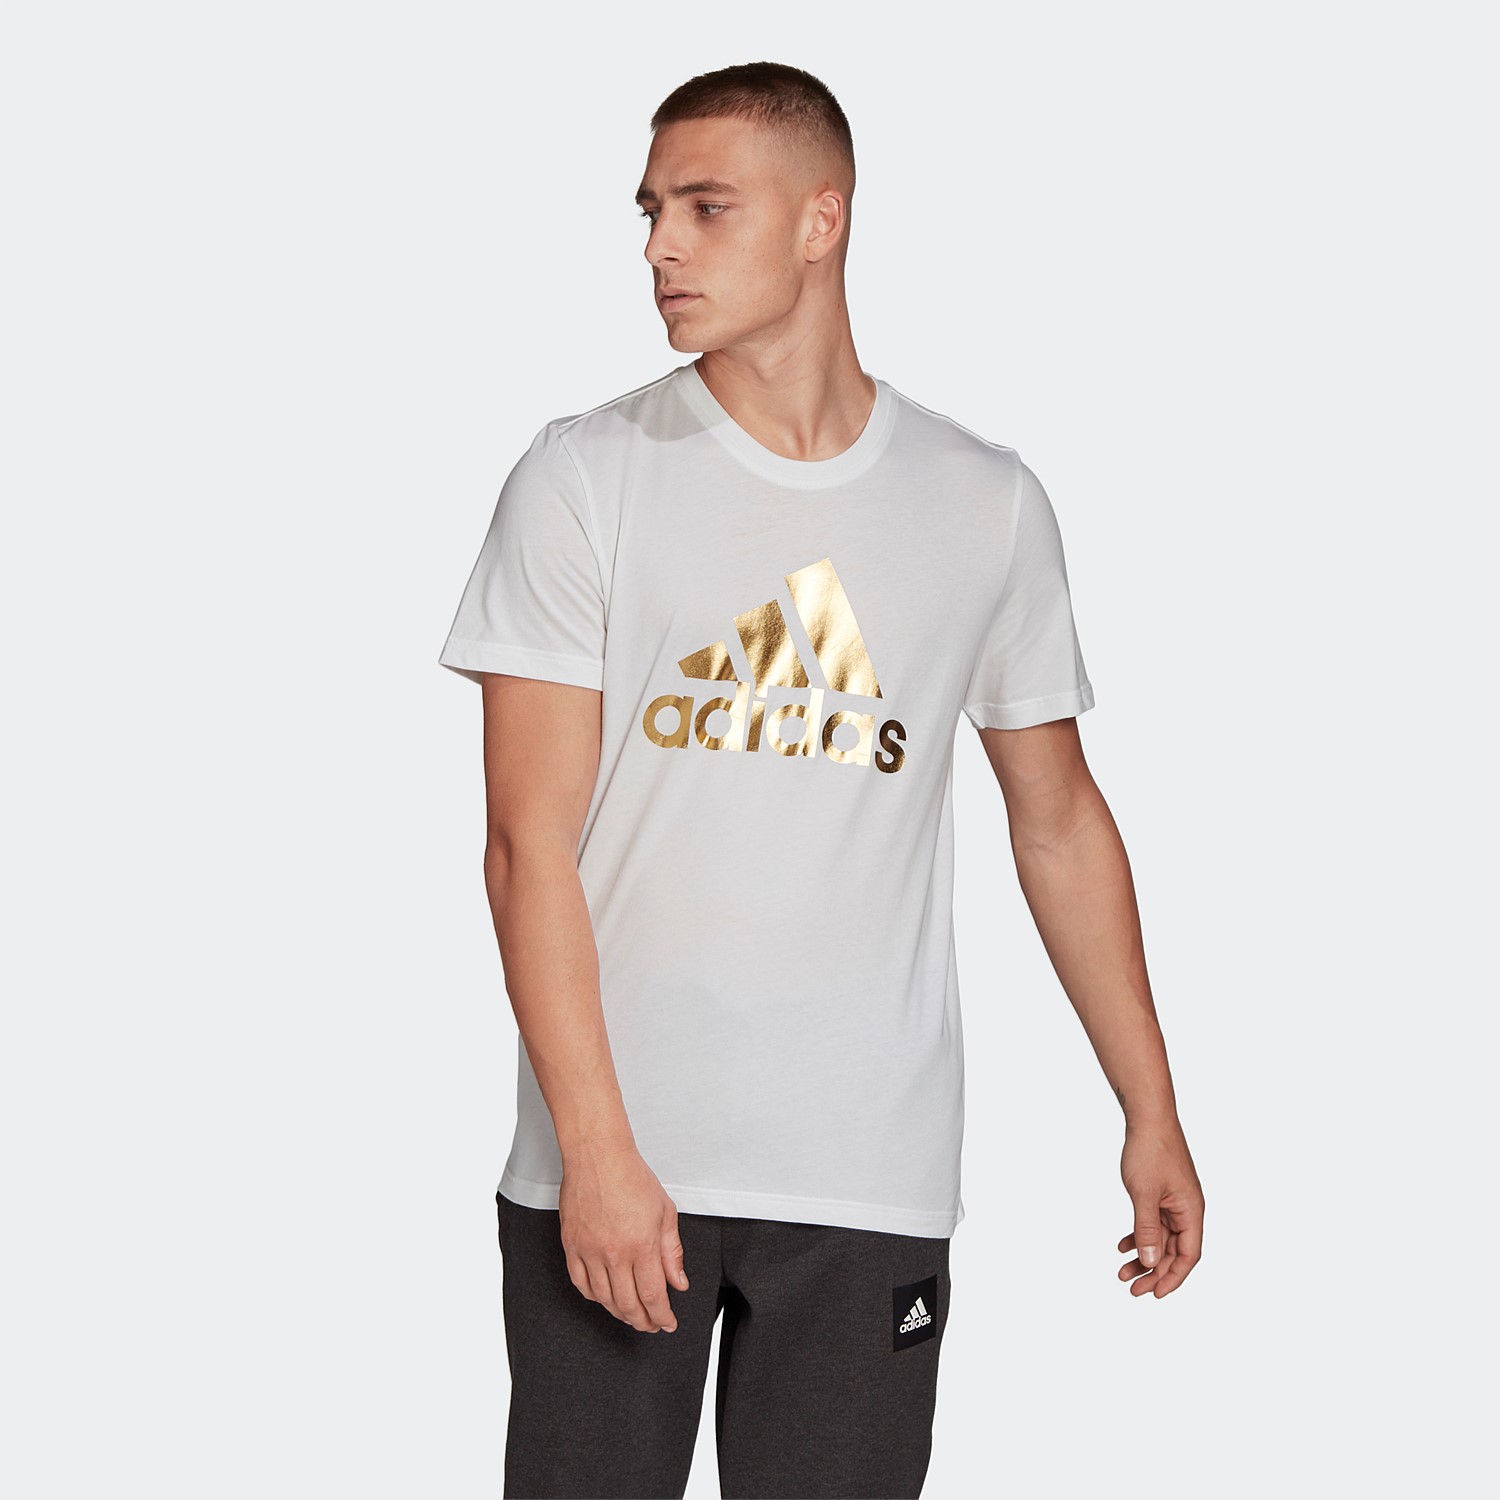 adidas gold foil t shirt